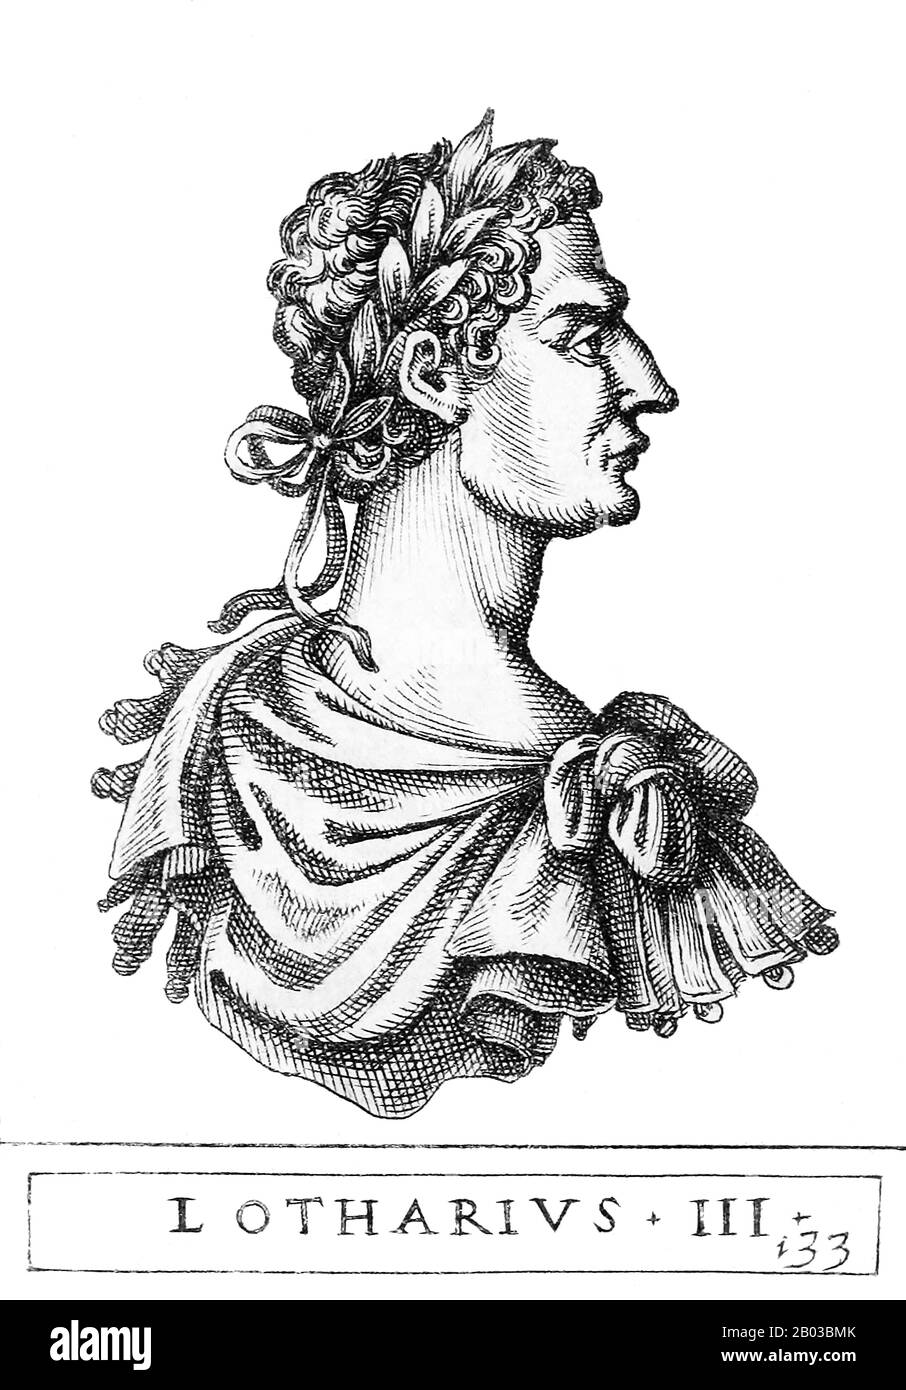 Lothair III (1075-1137), parfois numéroté Lothair II, était le fils du comte saxon Gebhard de Supplinburg. Il était le Saint empereur romain de 1133 jusqu'à sa mort. Banque D'Images